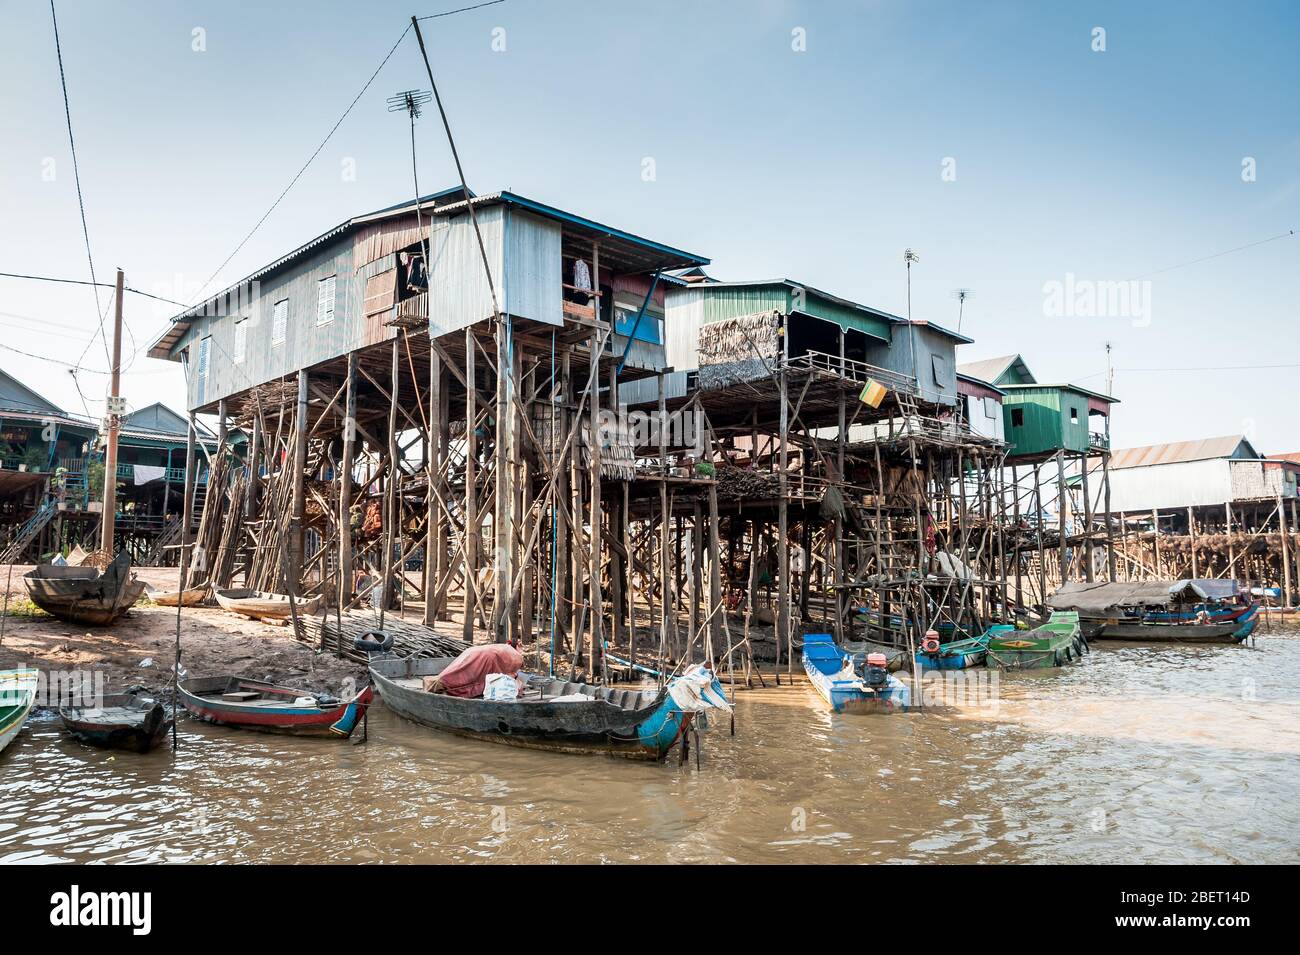 Photos des incroyables maisons sur pilotis au village flottant de Kampong Phluk près de Siem Reap, au Cambodge. Banque D'Images